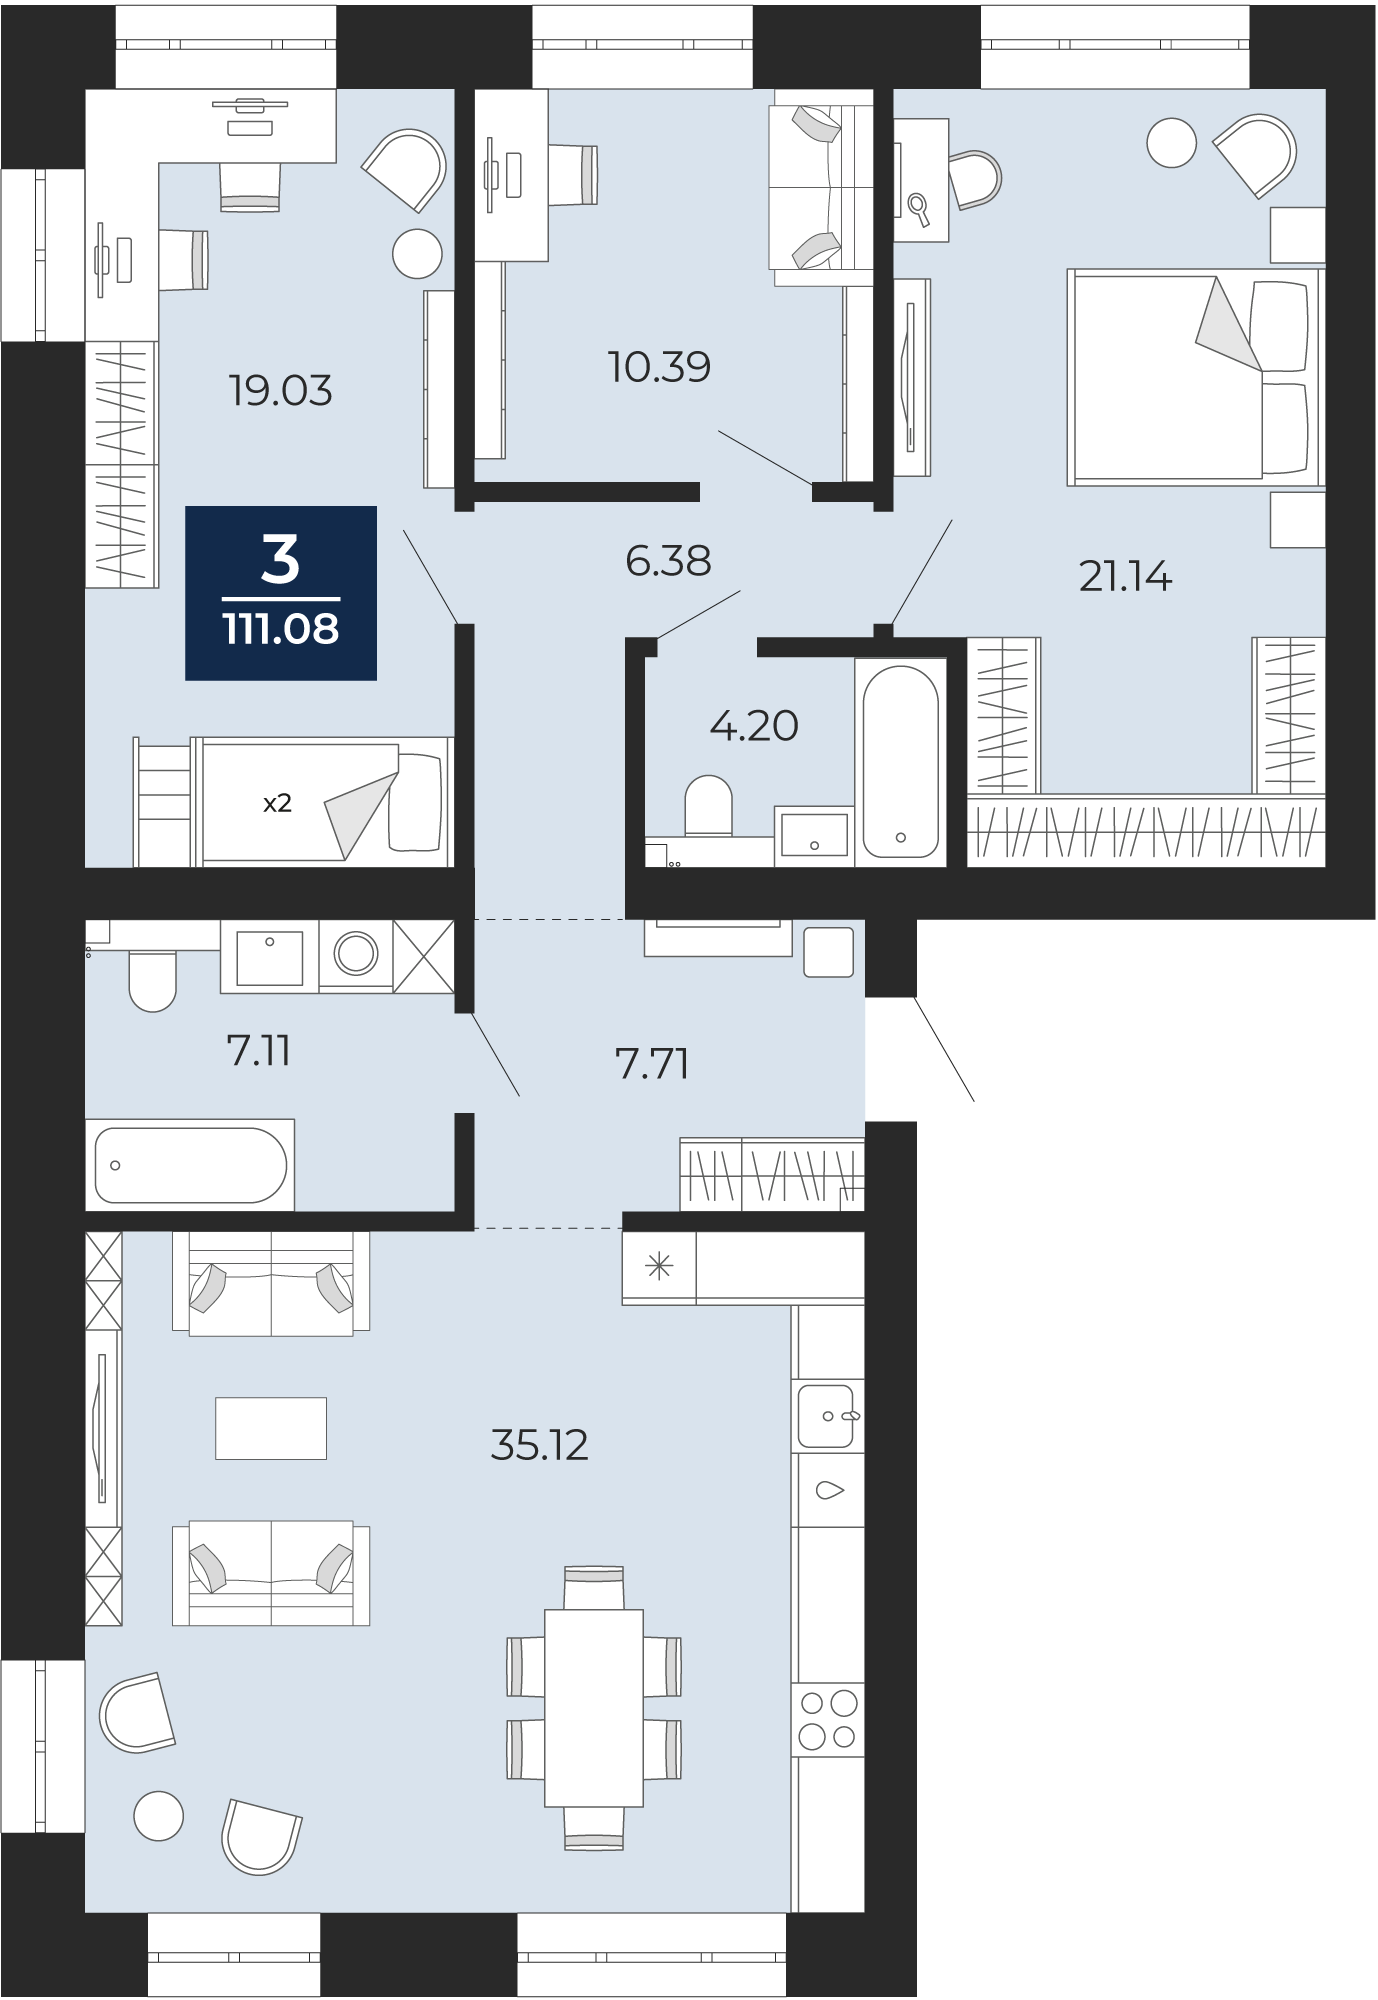 Квартира № 230, 3-комнатная, 111.08 кв. м, 7 этаж